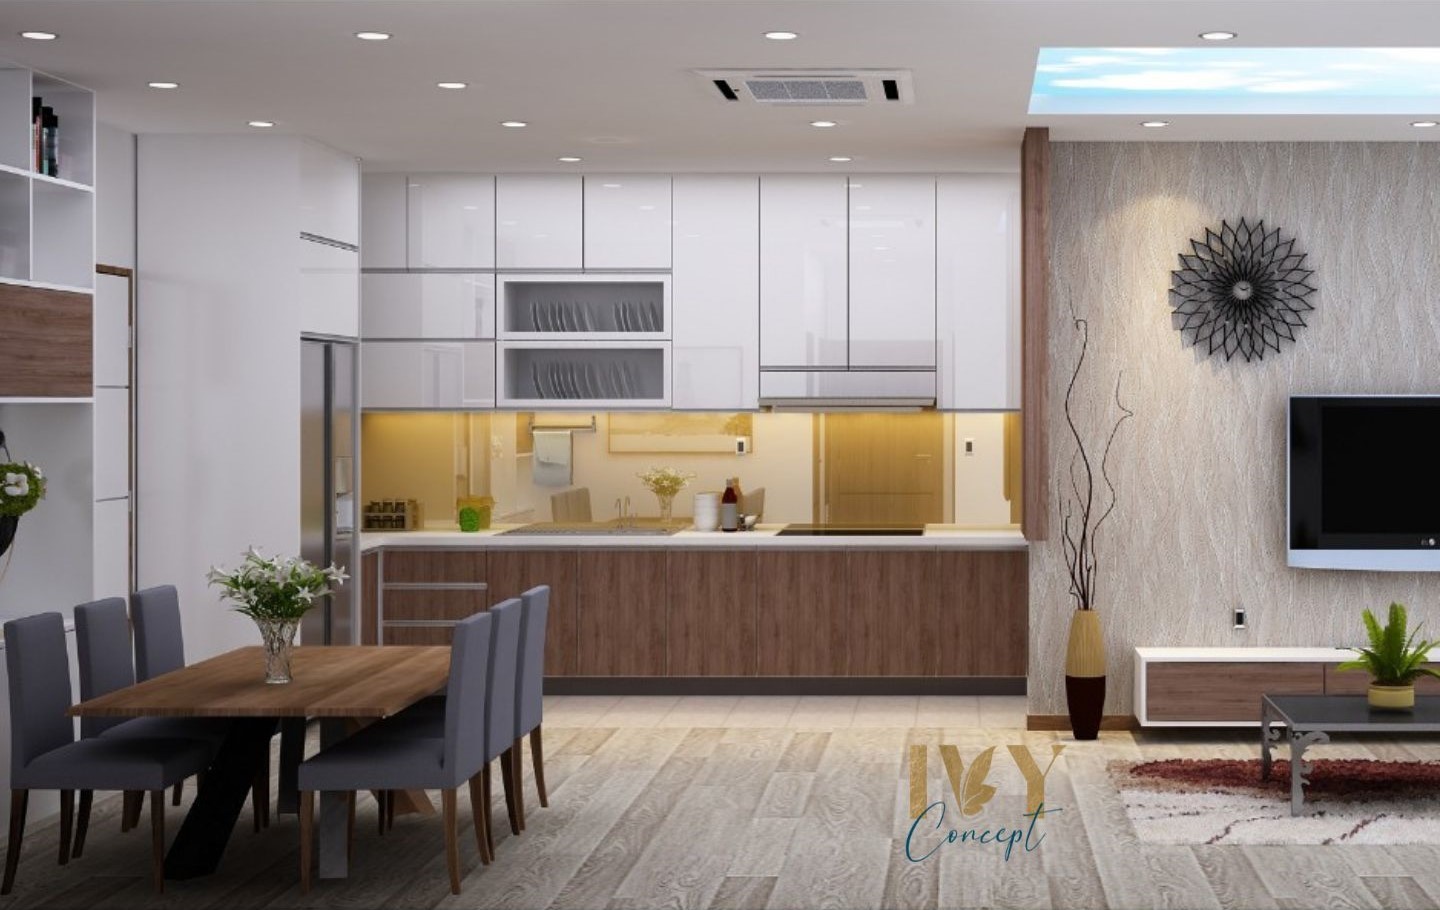 Phòng bếp, phòng ăn, phong cách Hiện đại Modern, thiết kế concept nội thất, căn hộ PetroVietnam Landmark